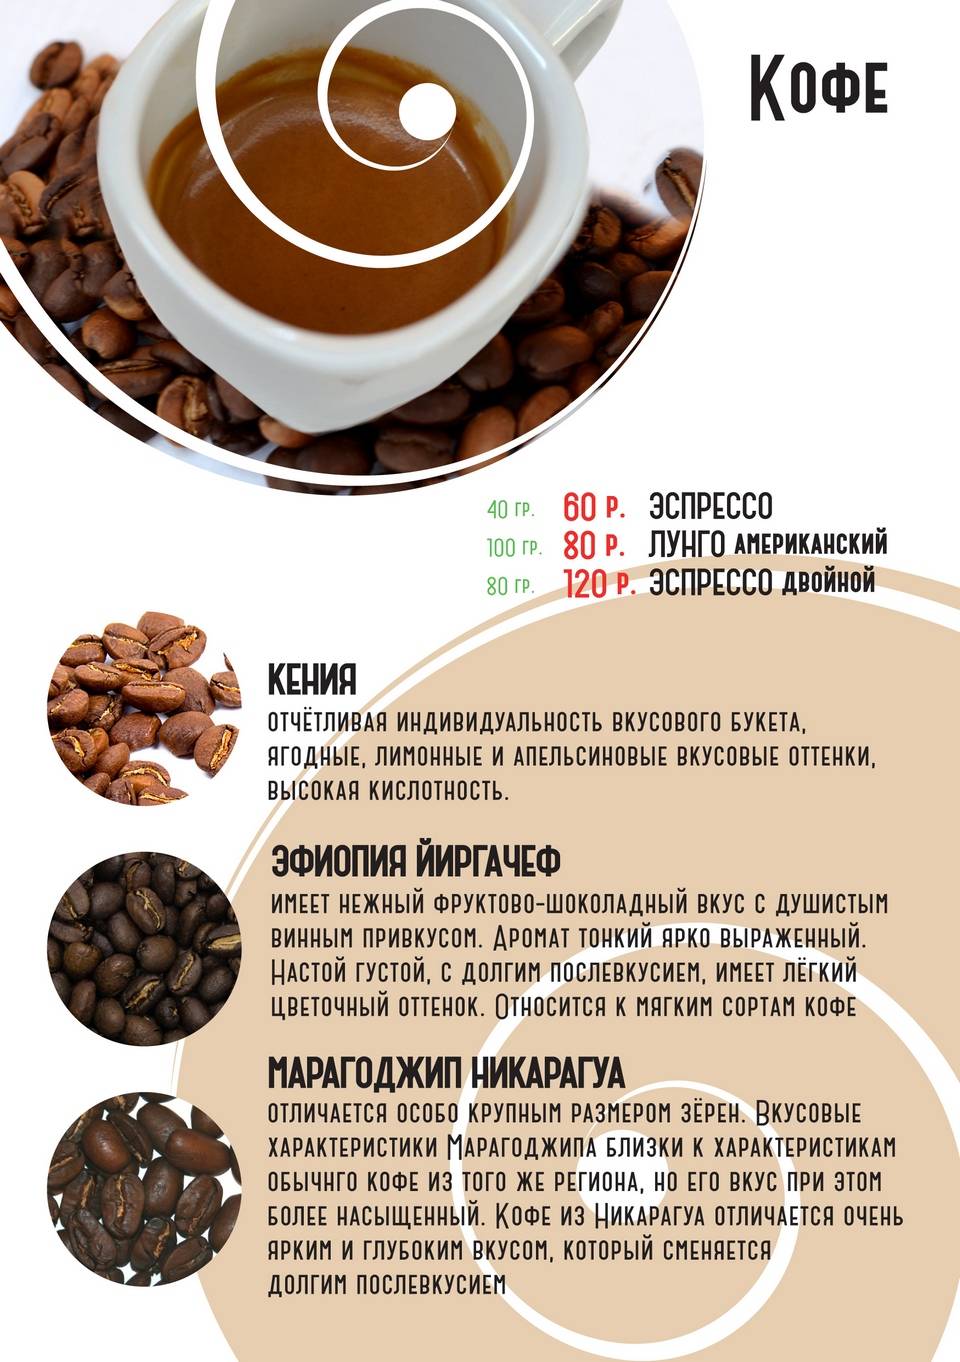 4 лучших рецепта кофе с какао: по-румынски, по-голливудски, с корицей